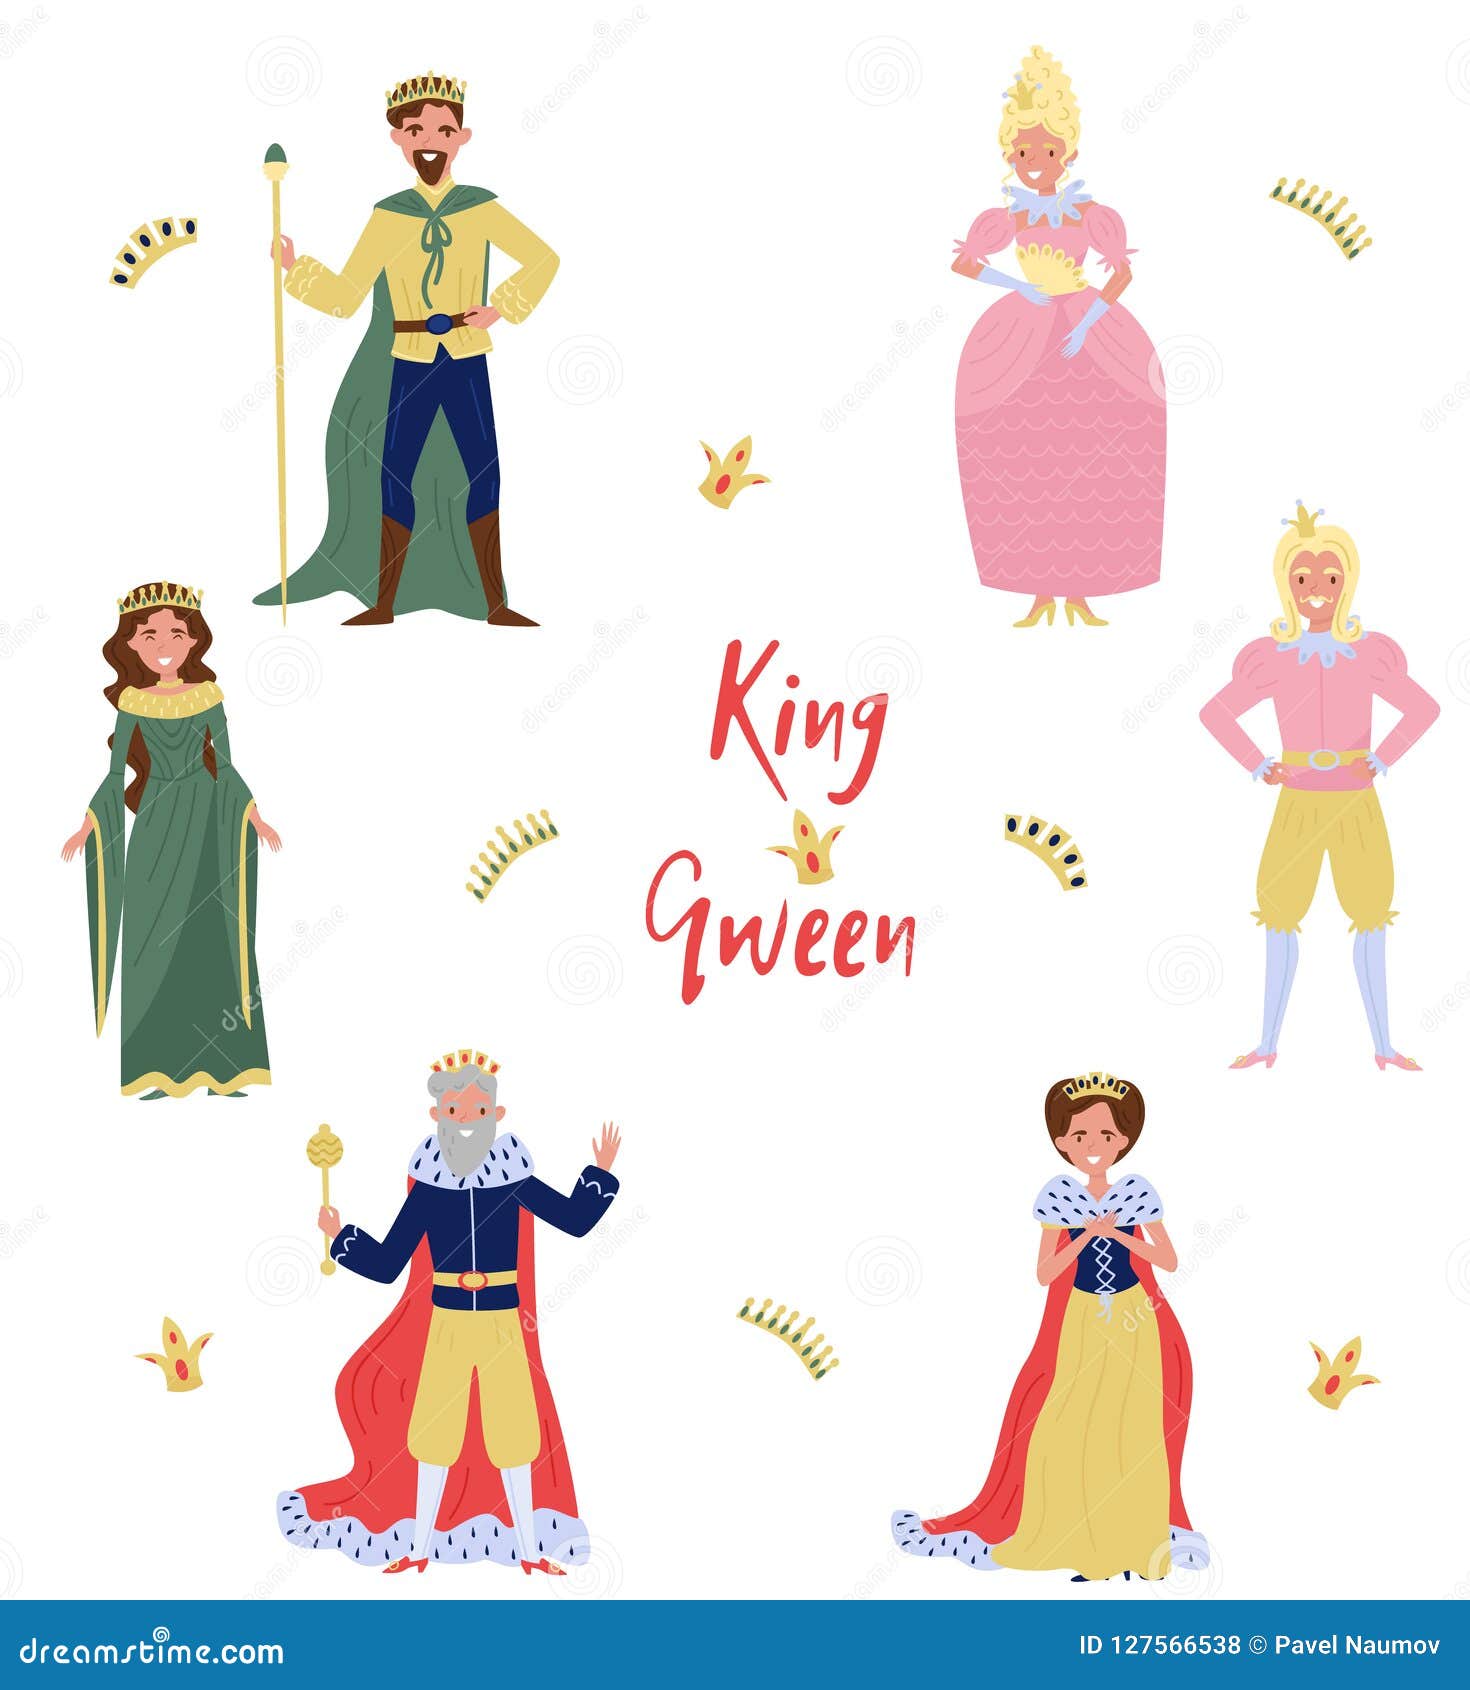 #King de ajedrez o Reina Infantil Niño/Niña Cuentos de Hadas Fancy Dress Costume todos los tamaños